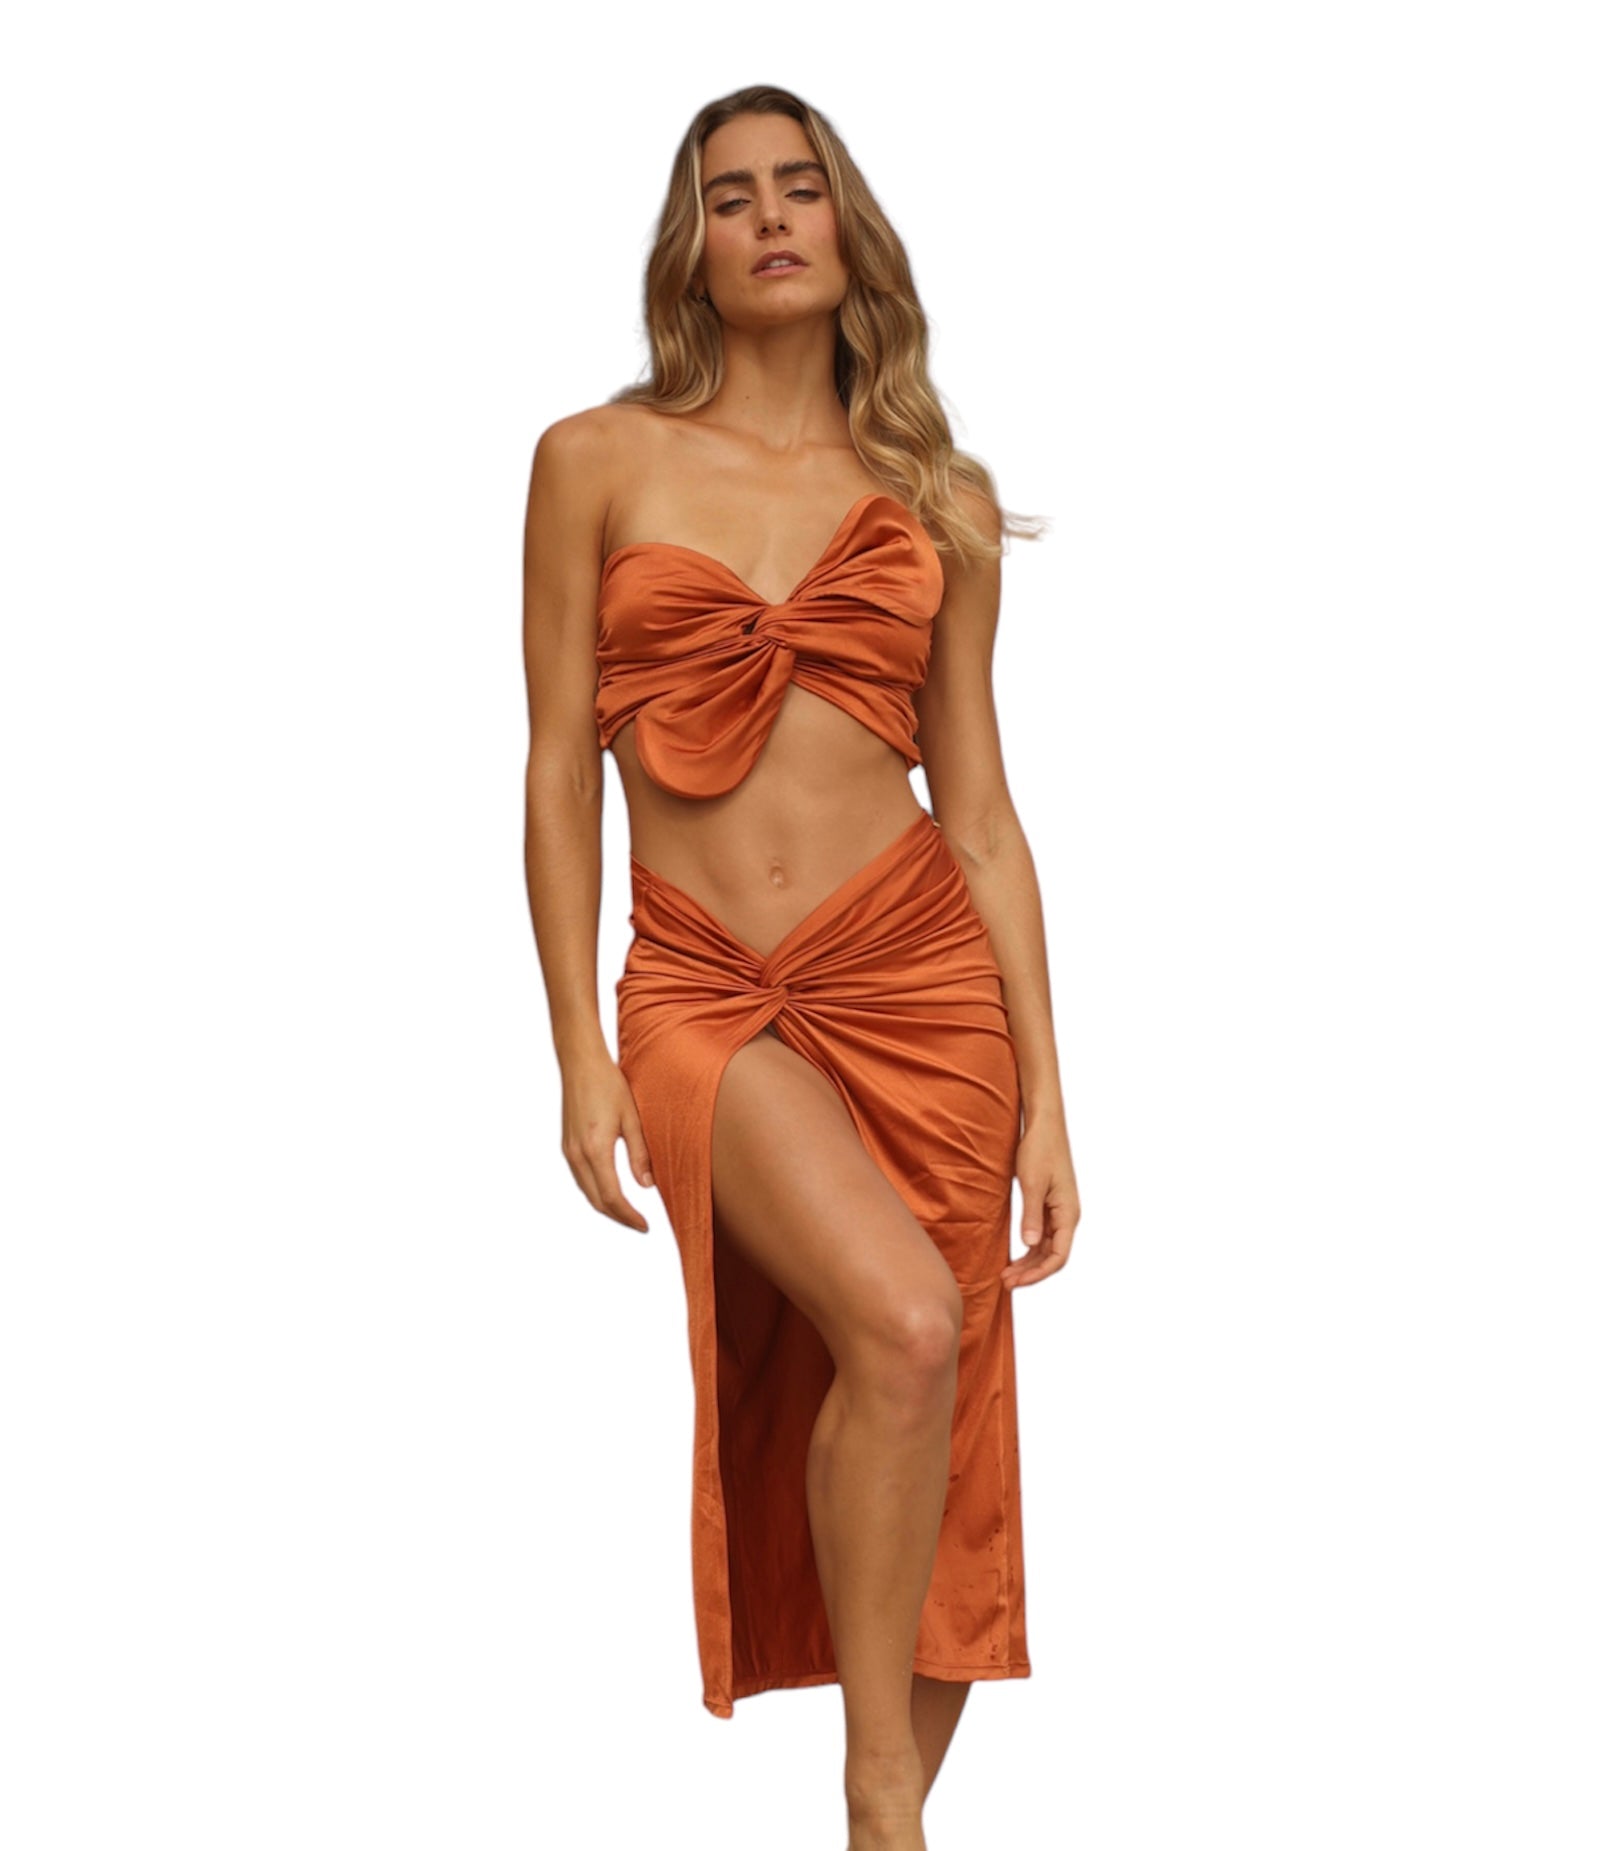 Cartagena Resortwear Set - Strapless Top - Long Skirt - Orange - Resortwear - Adara Swimwear - One Size (small to Large)--Adara Swimwear